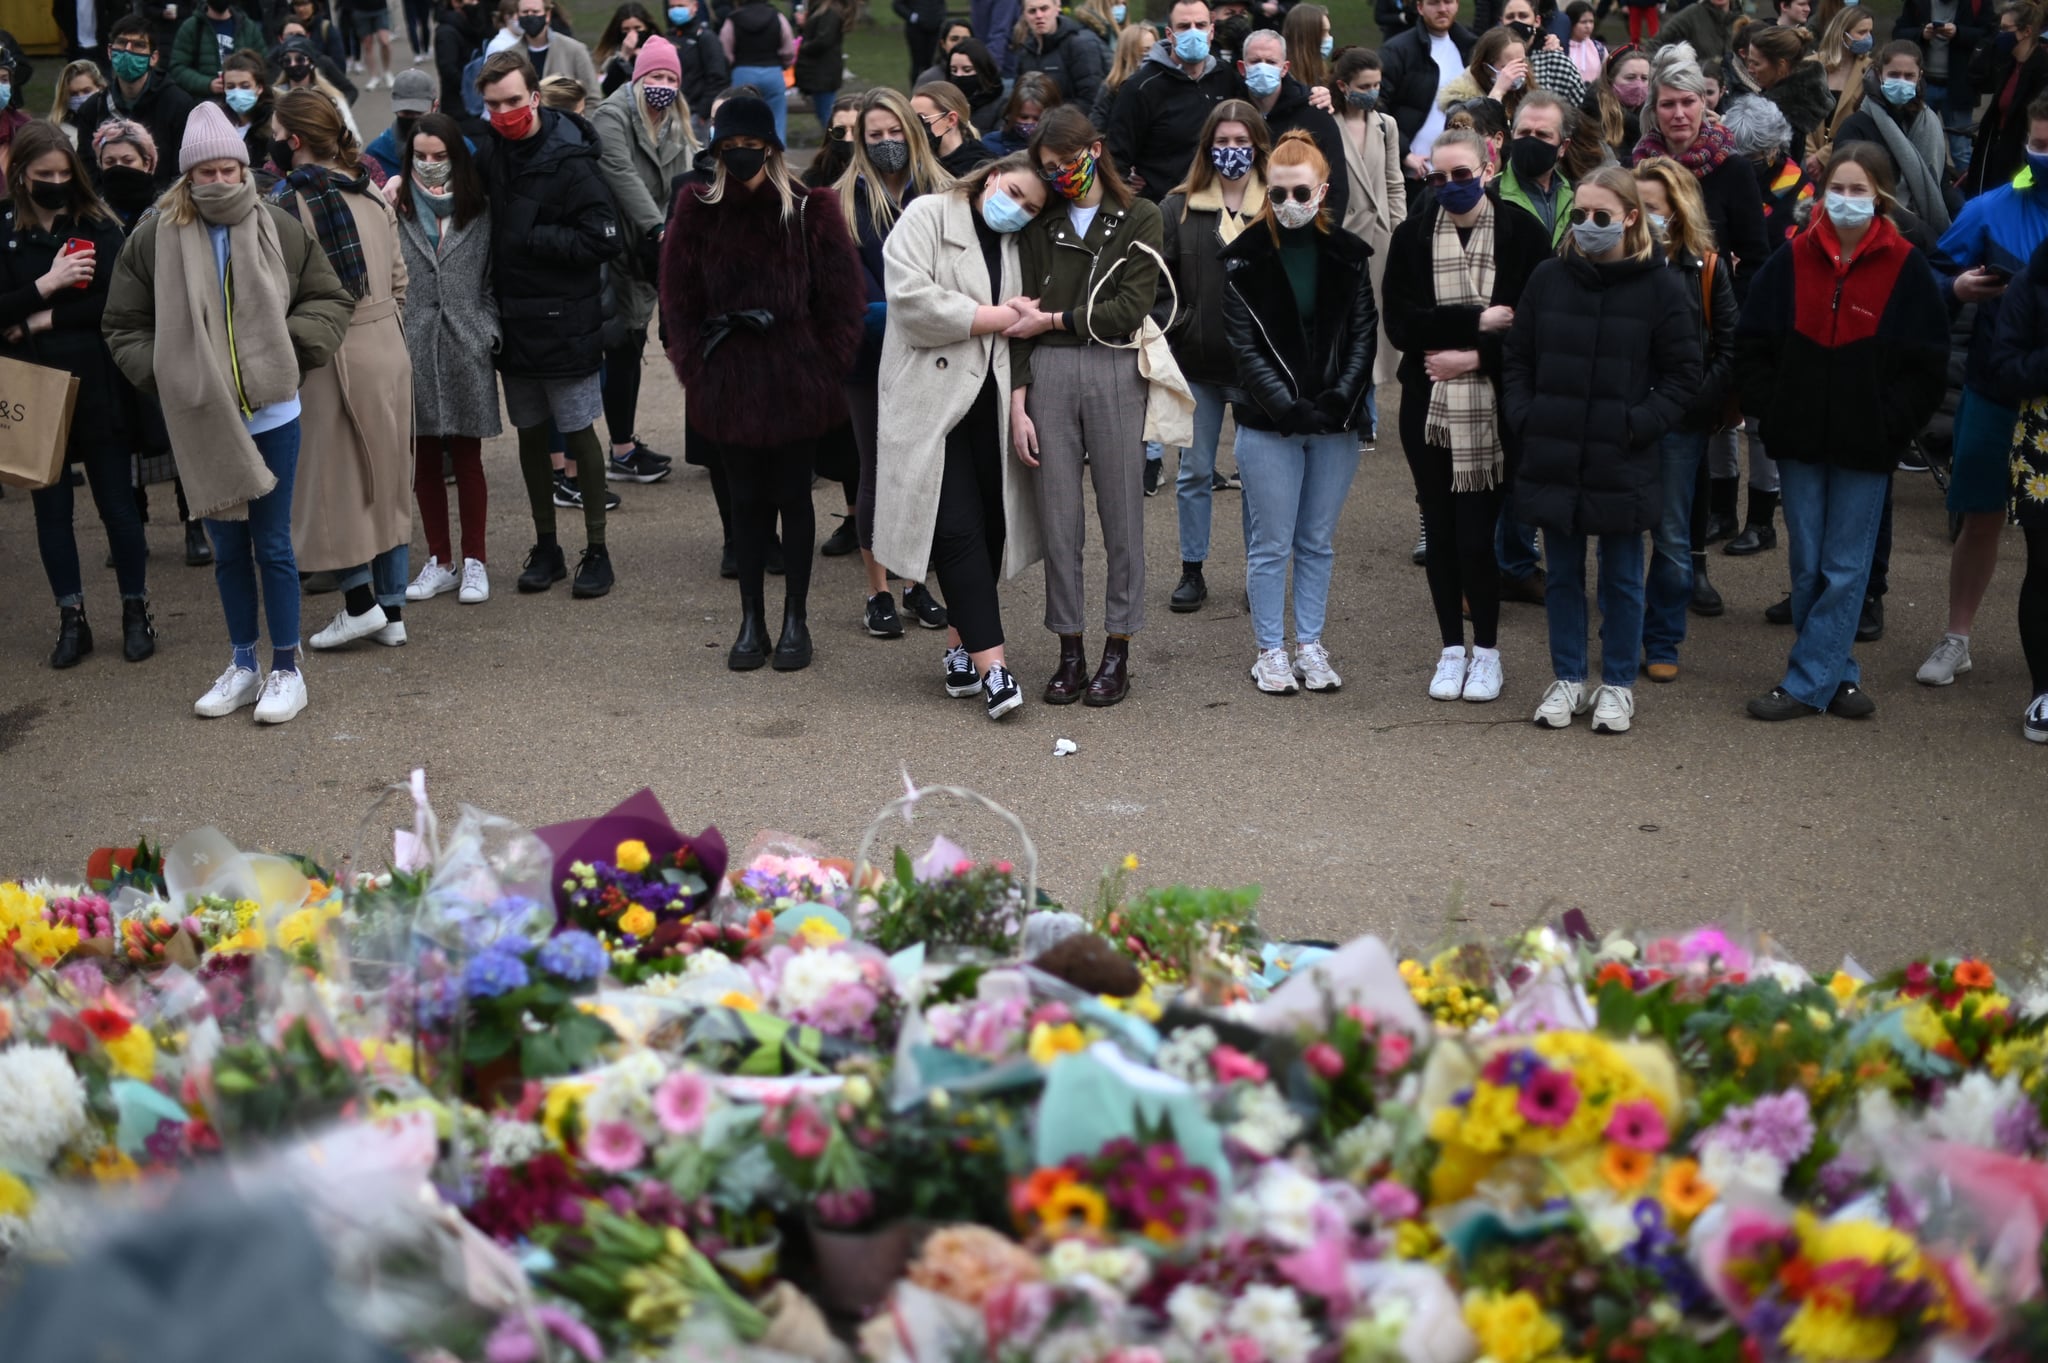 Reacciones de los seres queridos que se reunieron para depositar flores en memoria de la desaparecida Sarah Everard